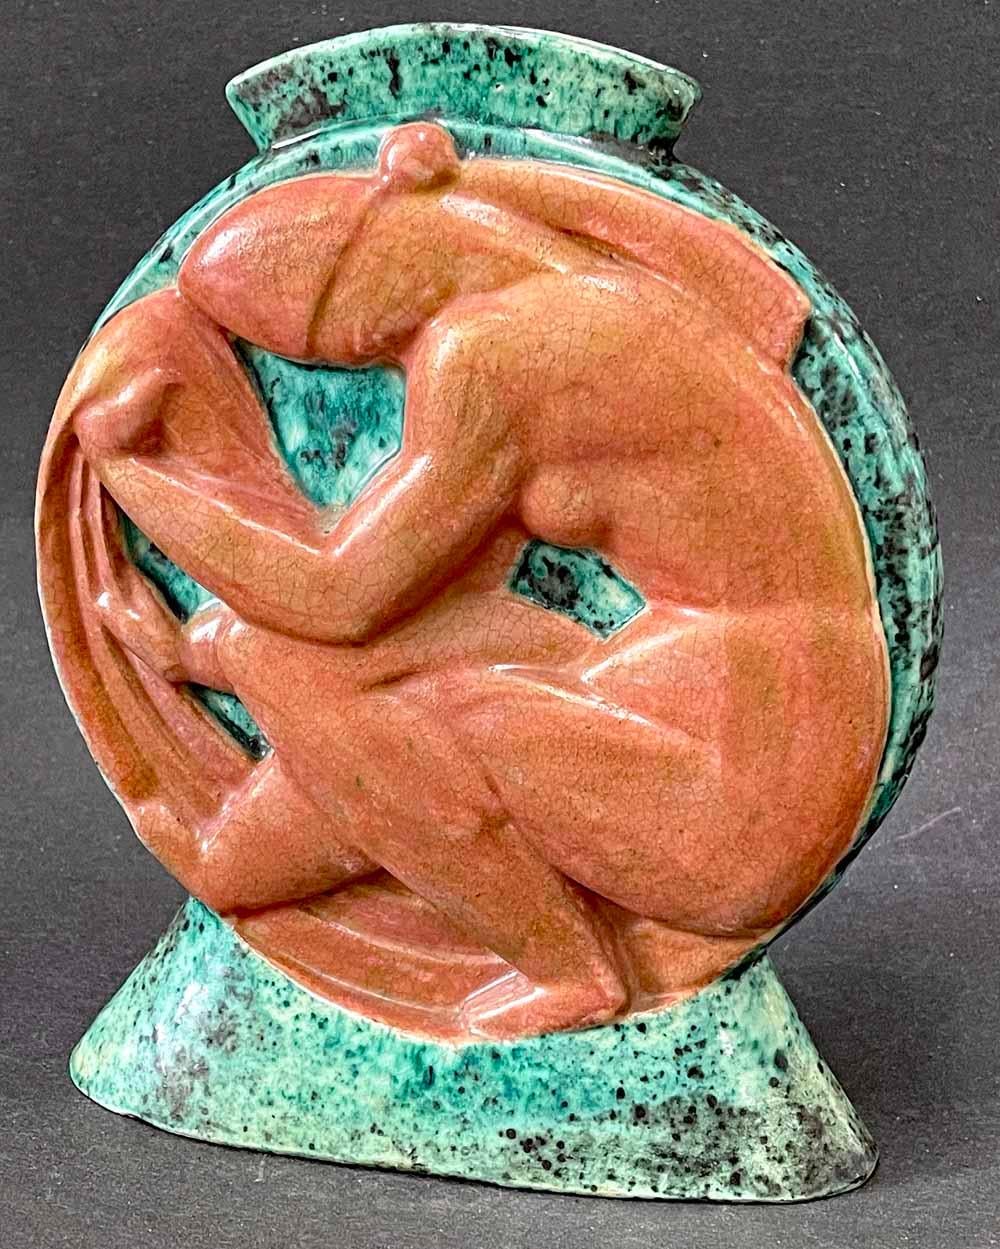 Diese von einem der Meister des französischen Art Déco kühn geformte und glasierte Vase wird von einem sitzenden weiblichen Akt mit gesenktem Kopf und gekreuzten Beinen dominiert, der in einem satten Terrakotta-Farbton glasiert ist und ein starkes